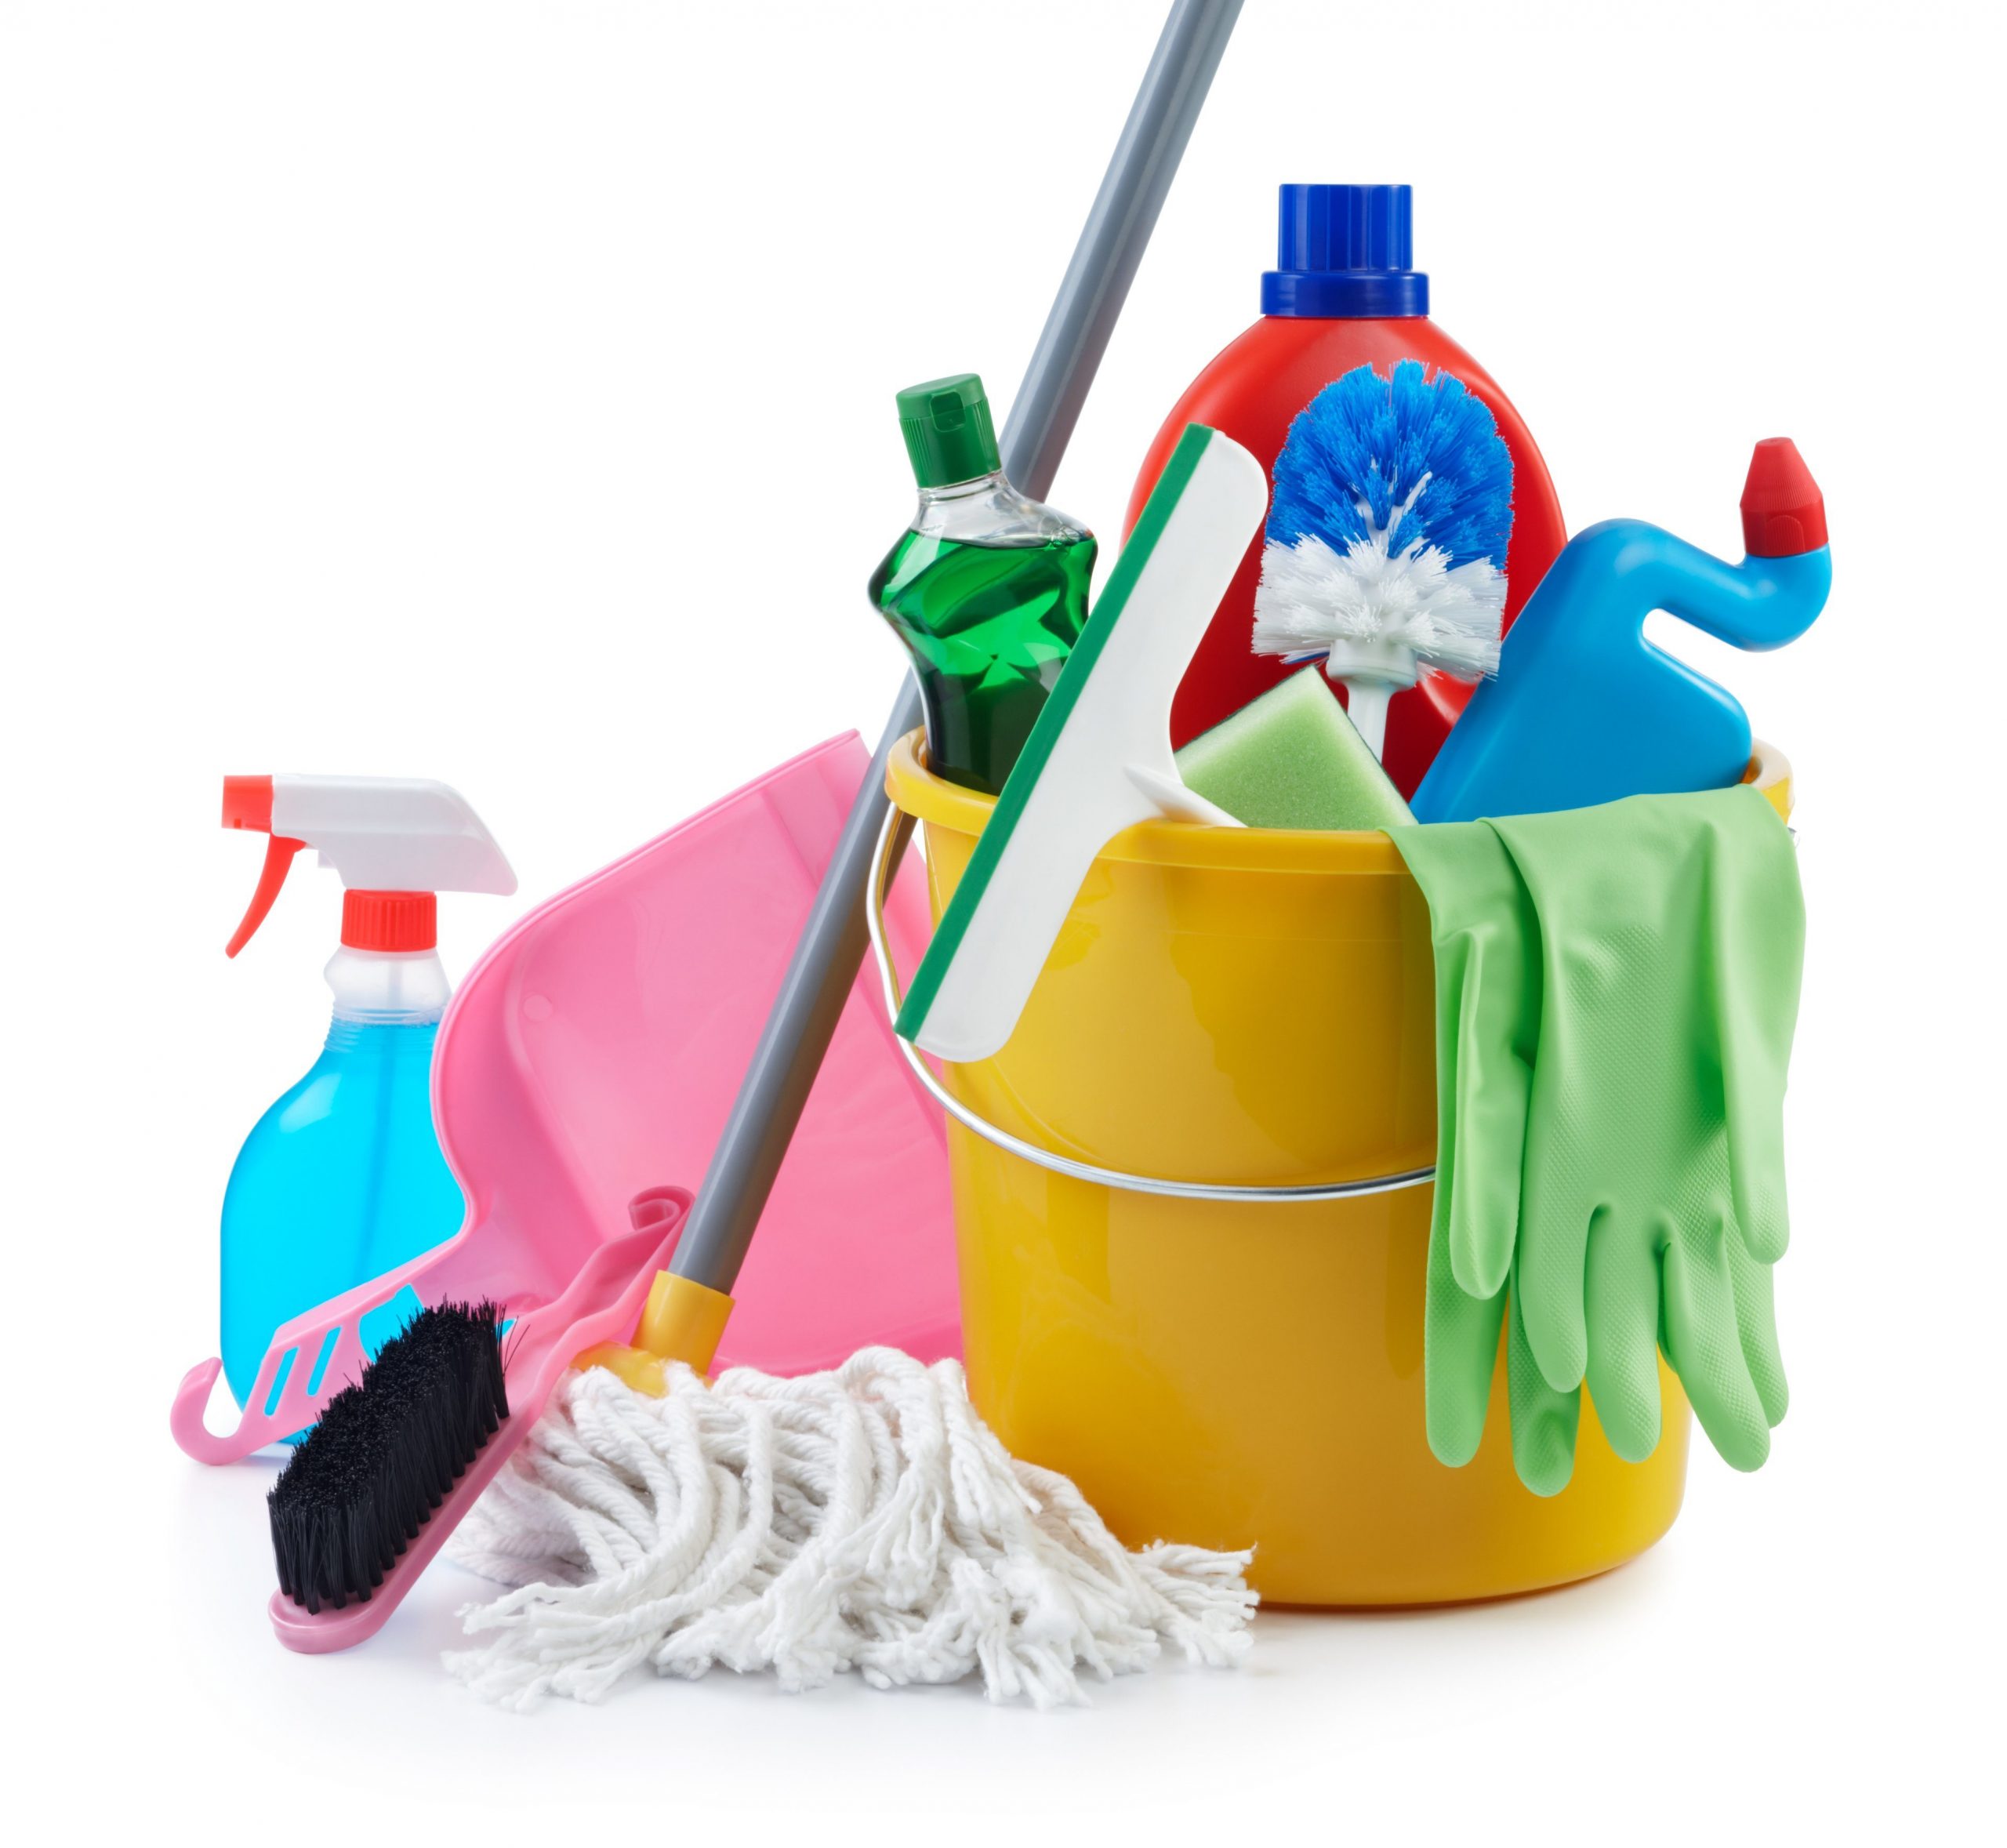 Cleaning tool. Предметы для уборки. Средства для уборки инвентарь. Уборка. Инвентарь для уборки квартиры.